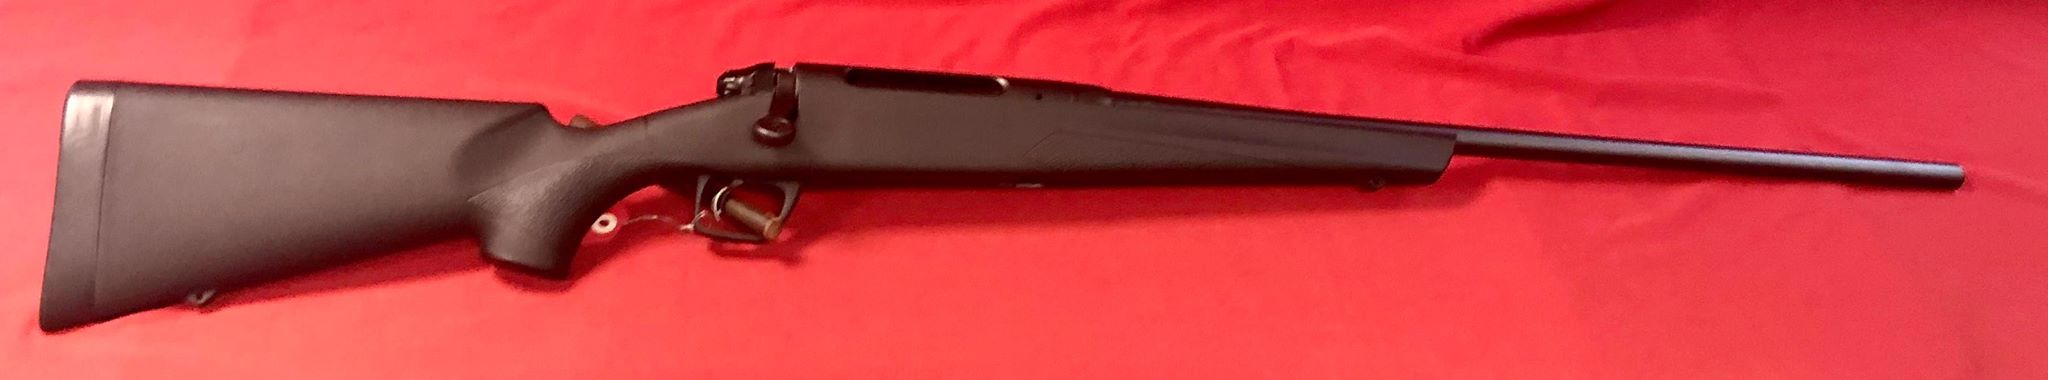 Carabine Remington 783 en calibre 7rem en synthétique